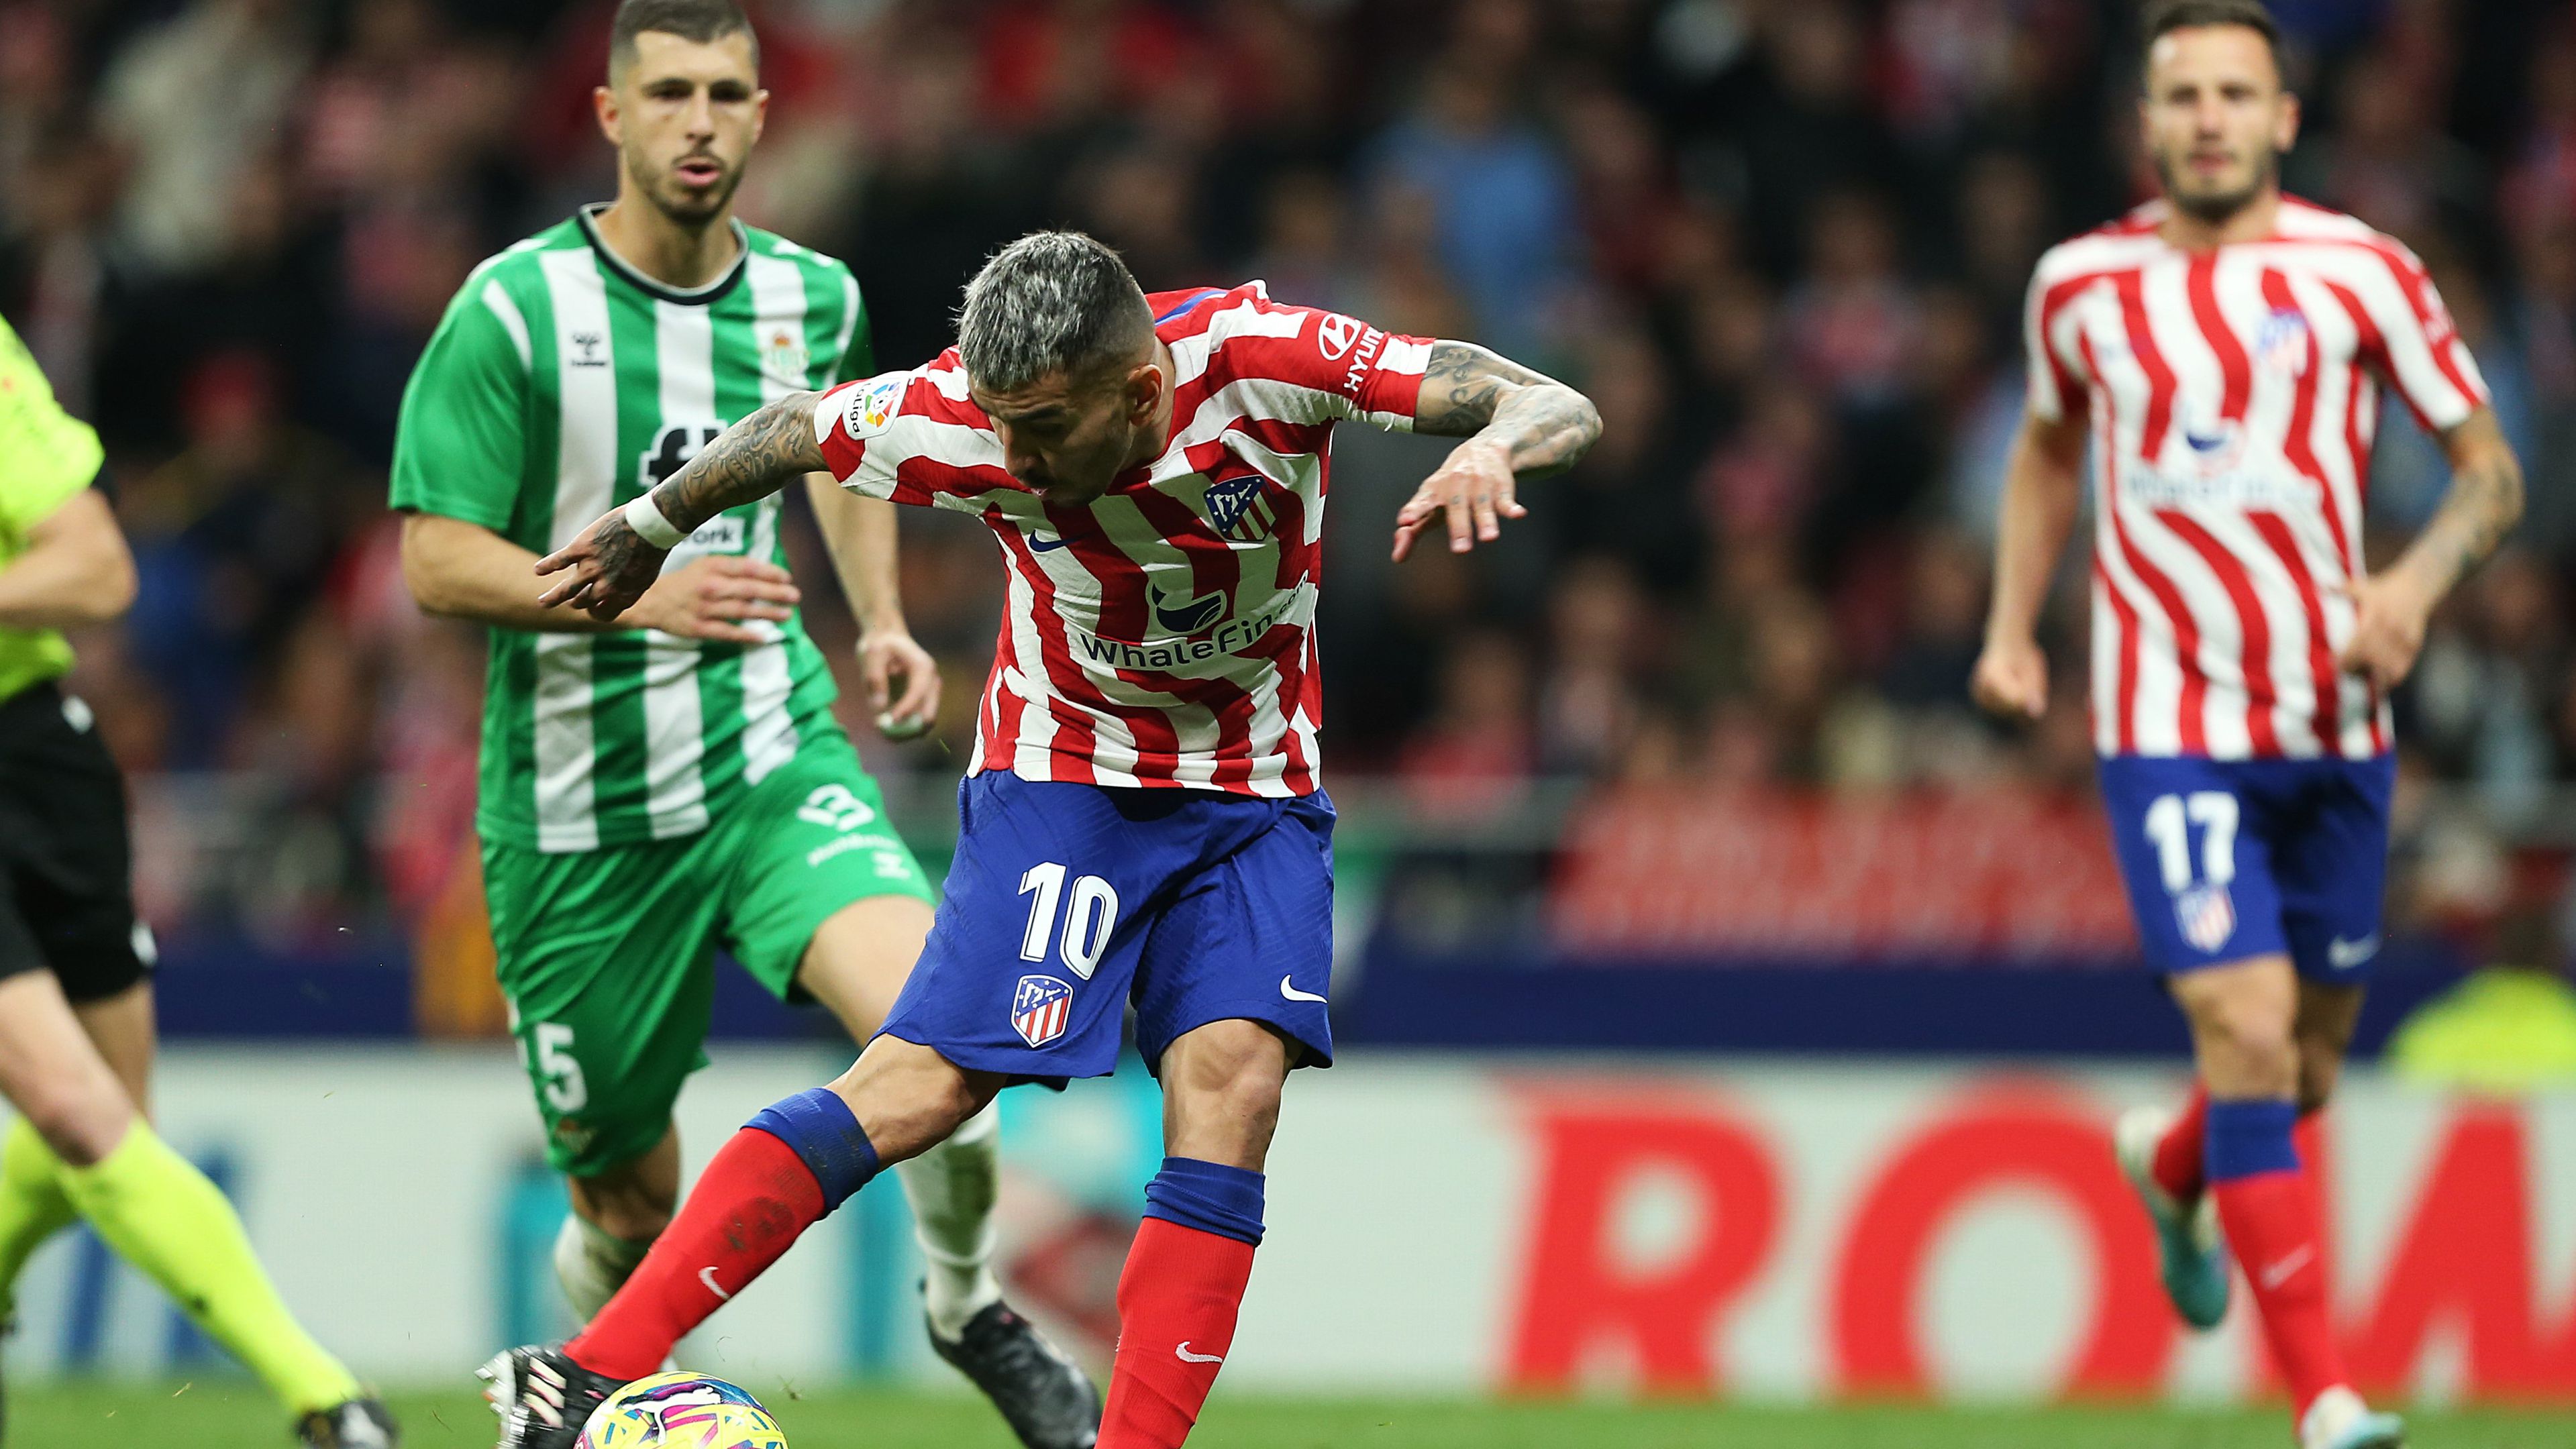 A csereként pályára lépő Correa négy Betis-védőt is átjátszott, mielőtt megszerezte az Atlético Madrid győztes gólját.